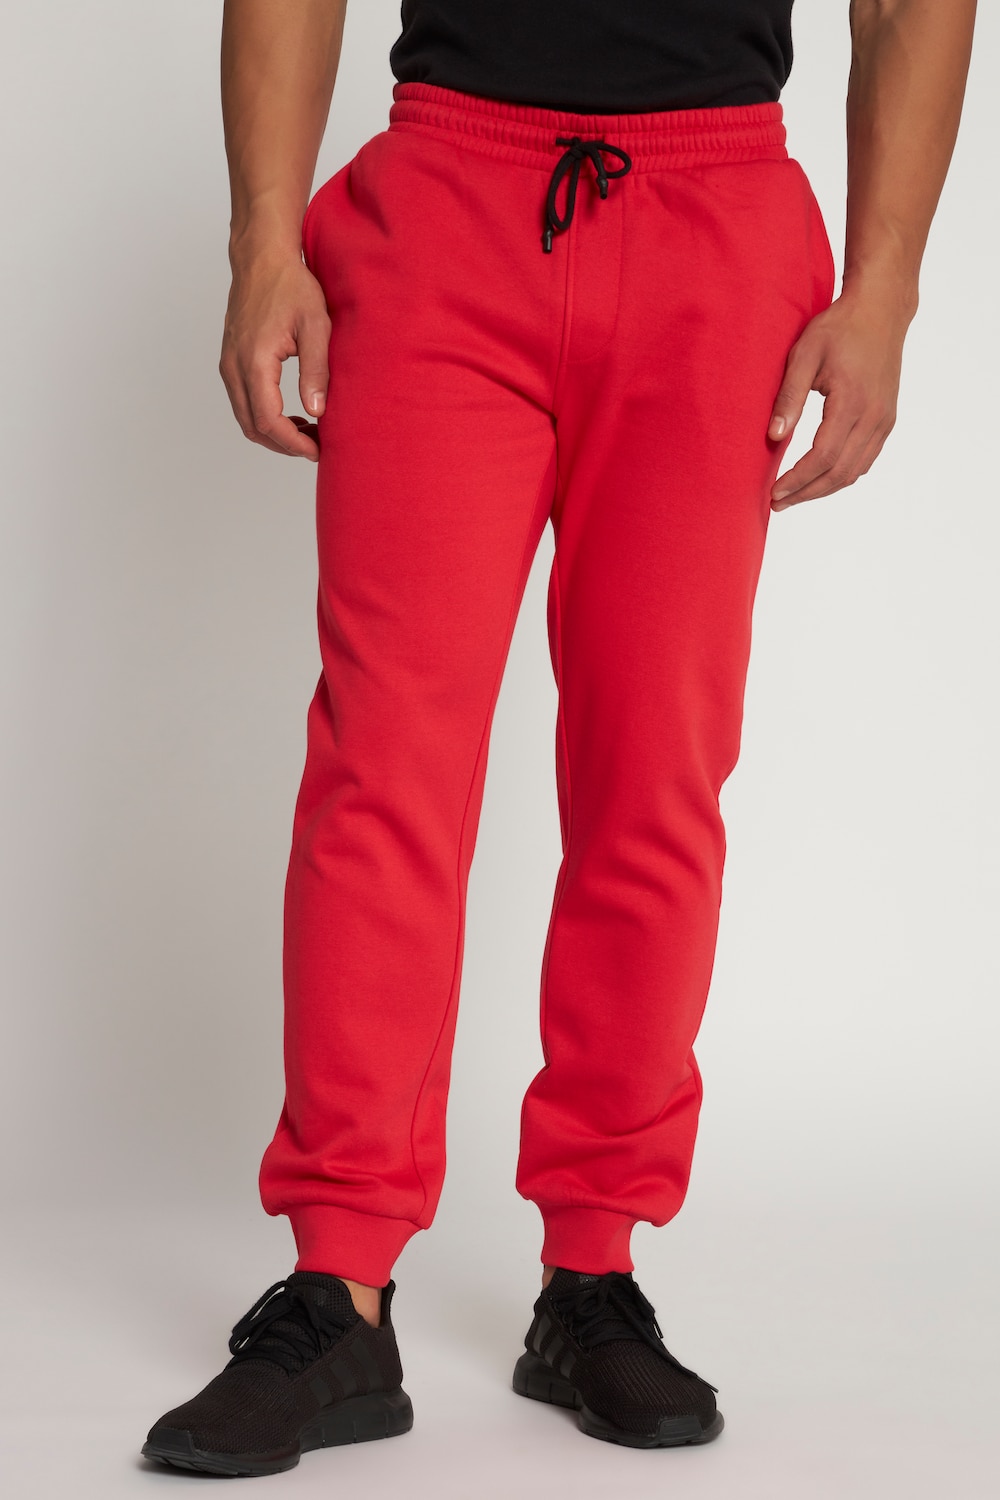 Große Größen Sweat-Hose, Herren, rot, Größe: 7XL, Baumwolle/Polyester, JP1880 von JP1880